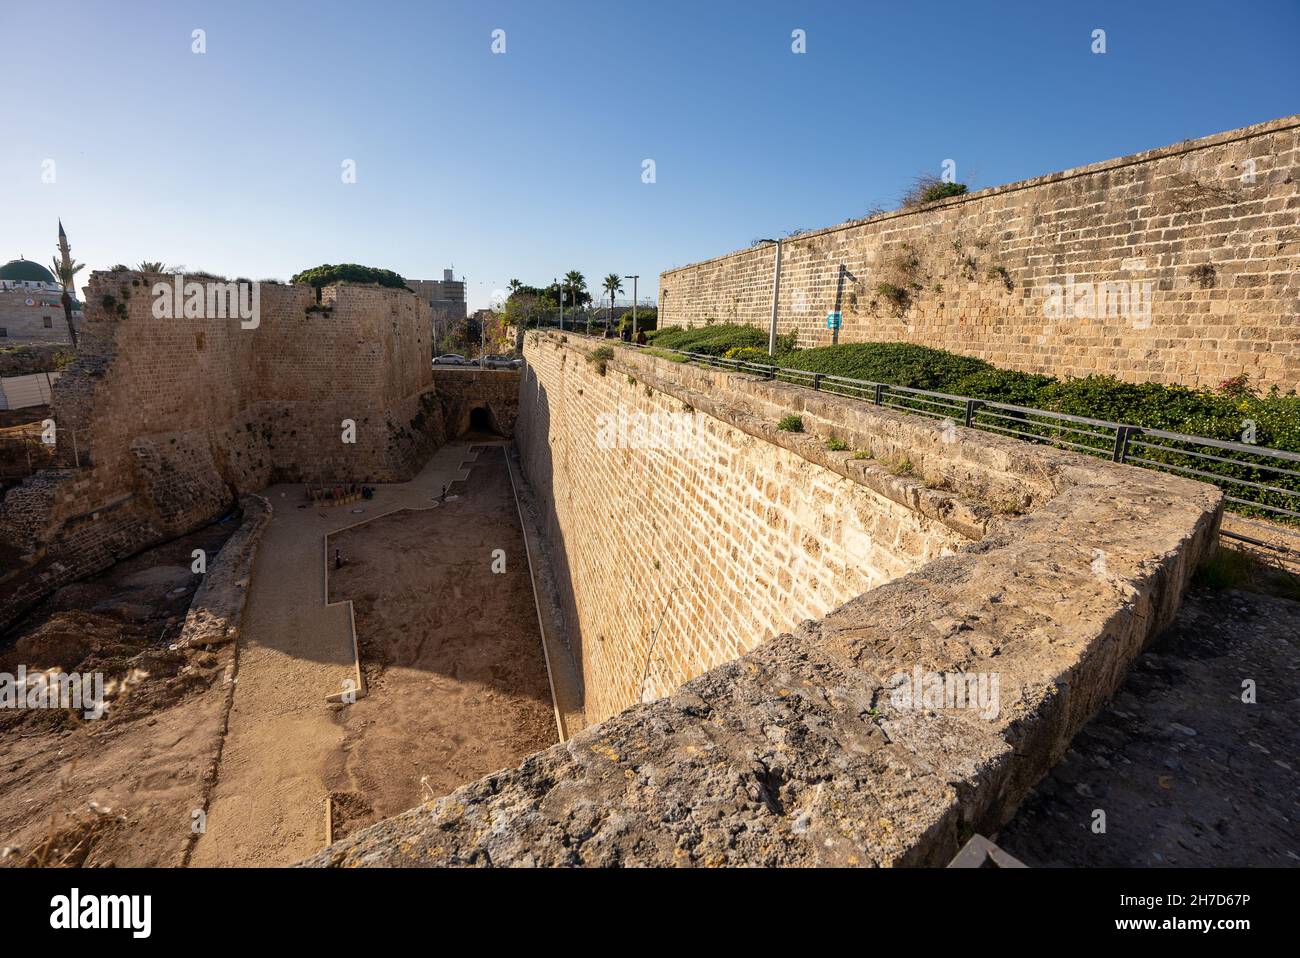 Israël, dans l'ouest de la Galilée, les remparts de la vieille ville d'Acre Banque D'Images